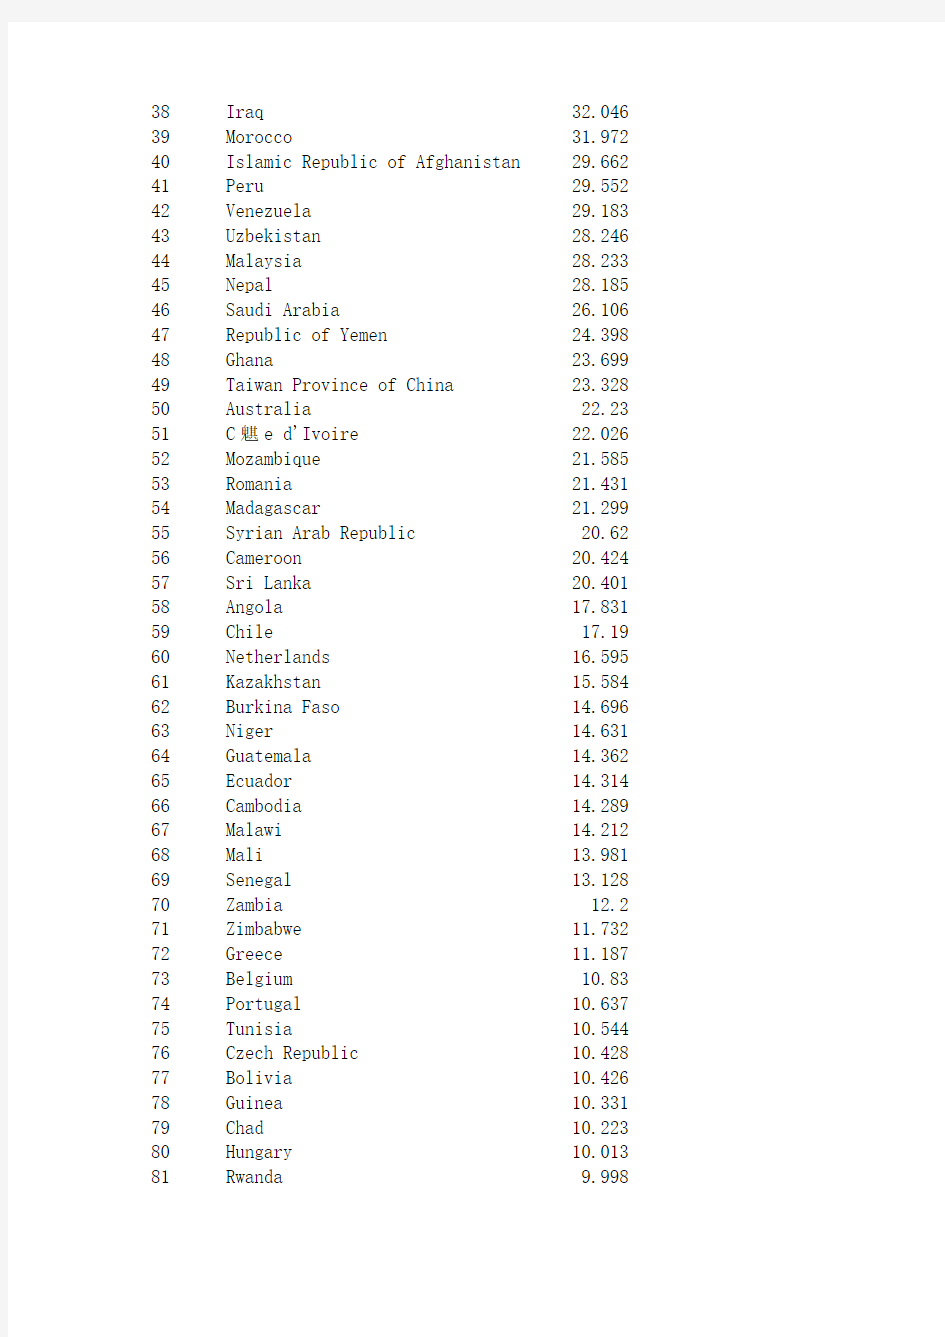 2010年世界各国人口排名